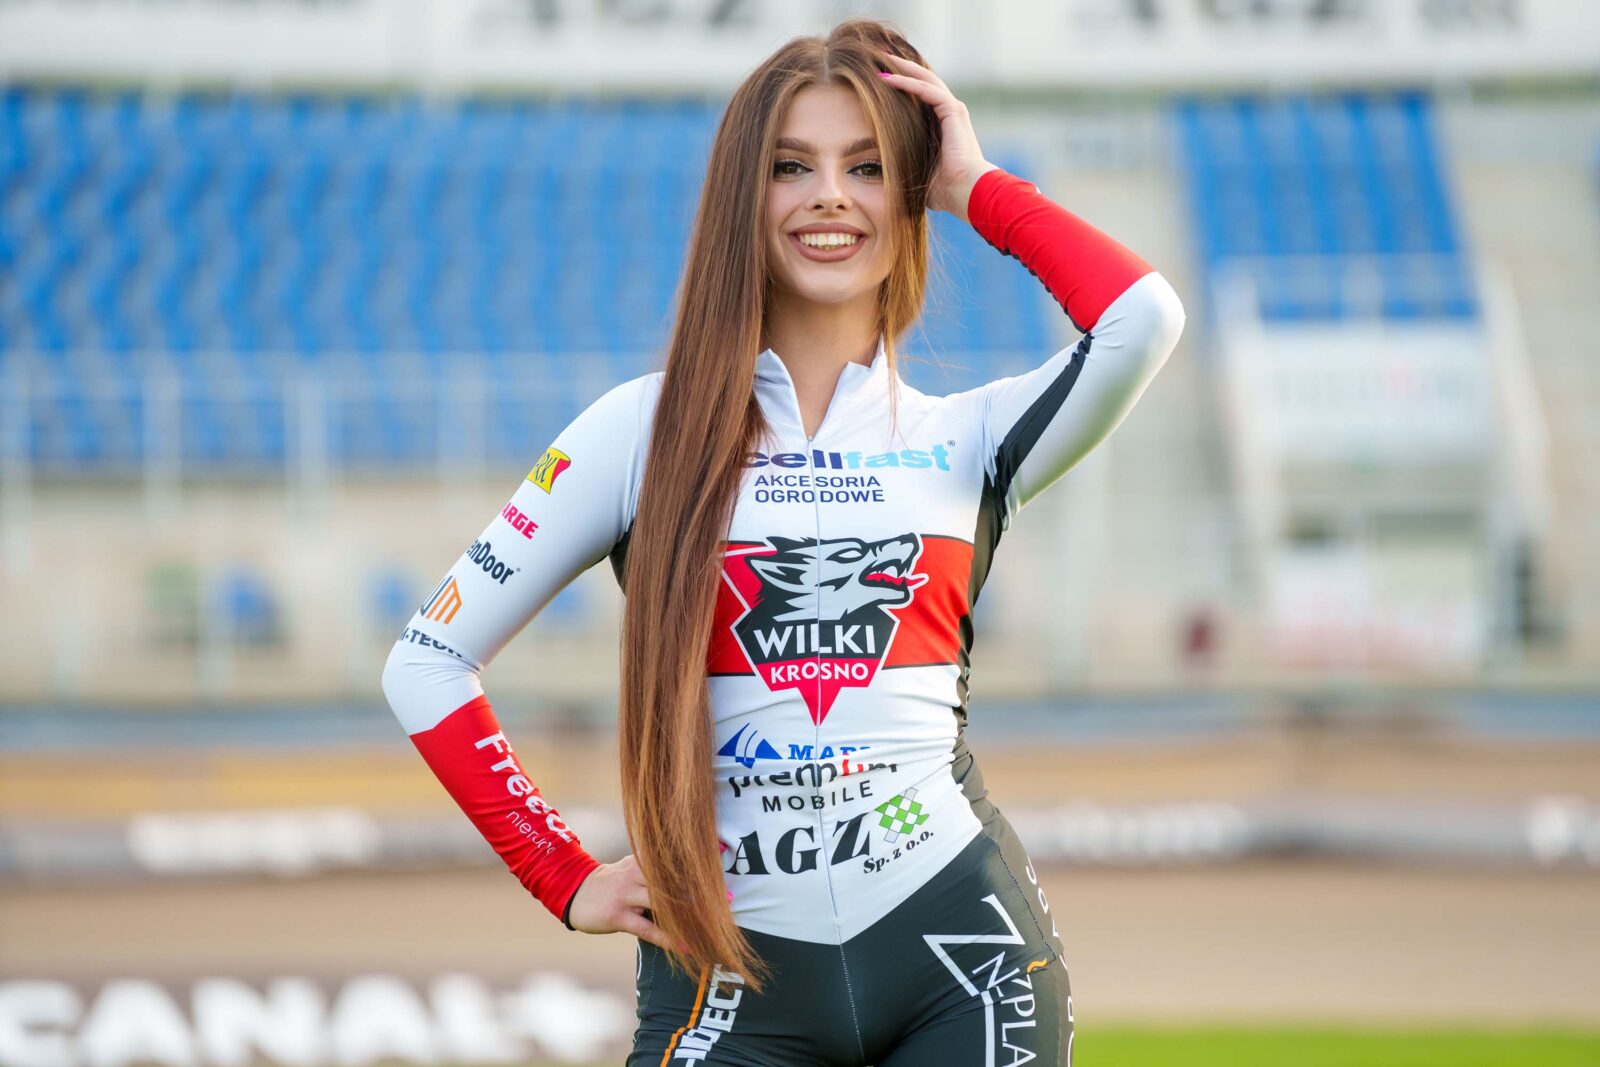 Natalia Furtek PGE Ekstraliga Miss Startu Women CELLFAST WiLKi Krosno Polish Women 1600x1067